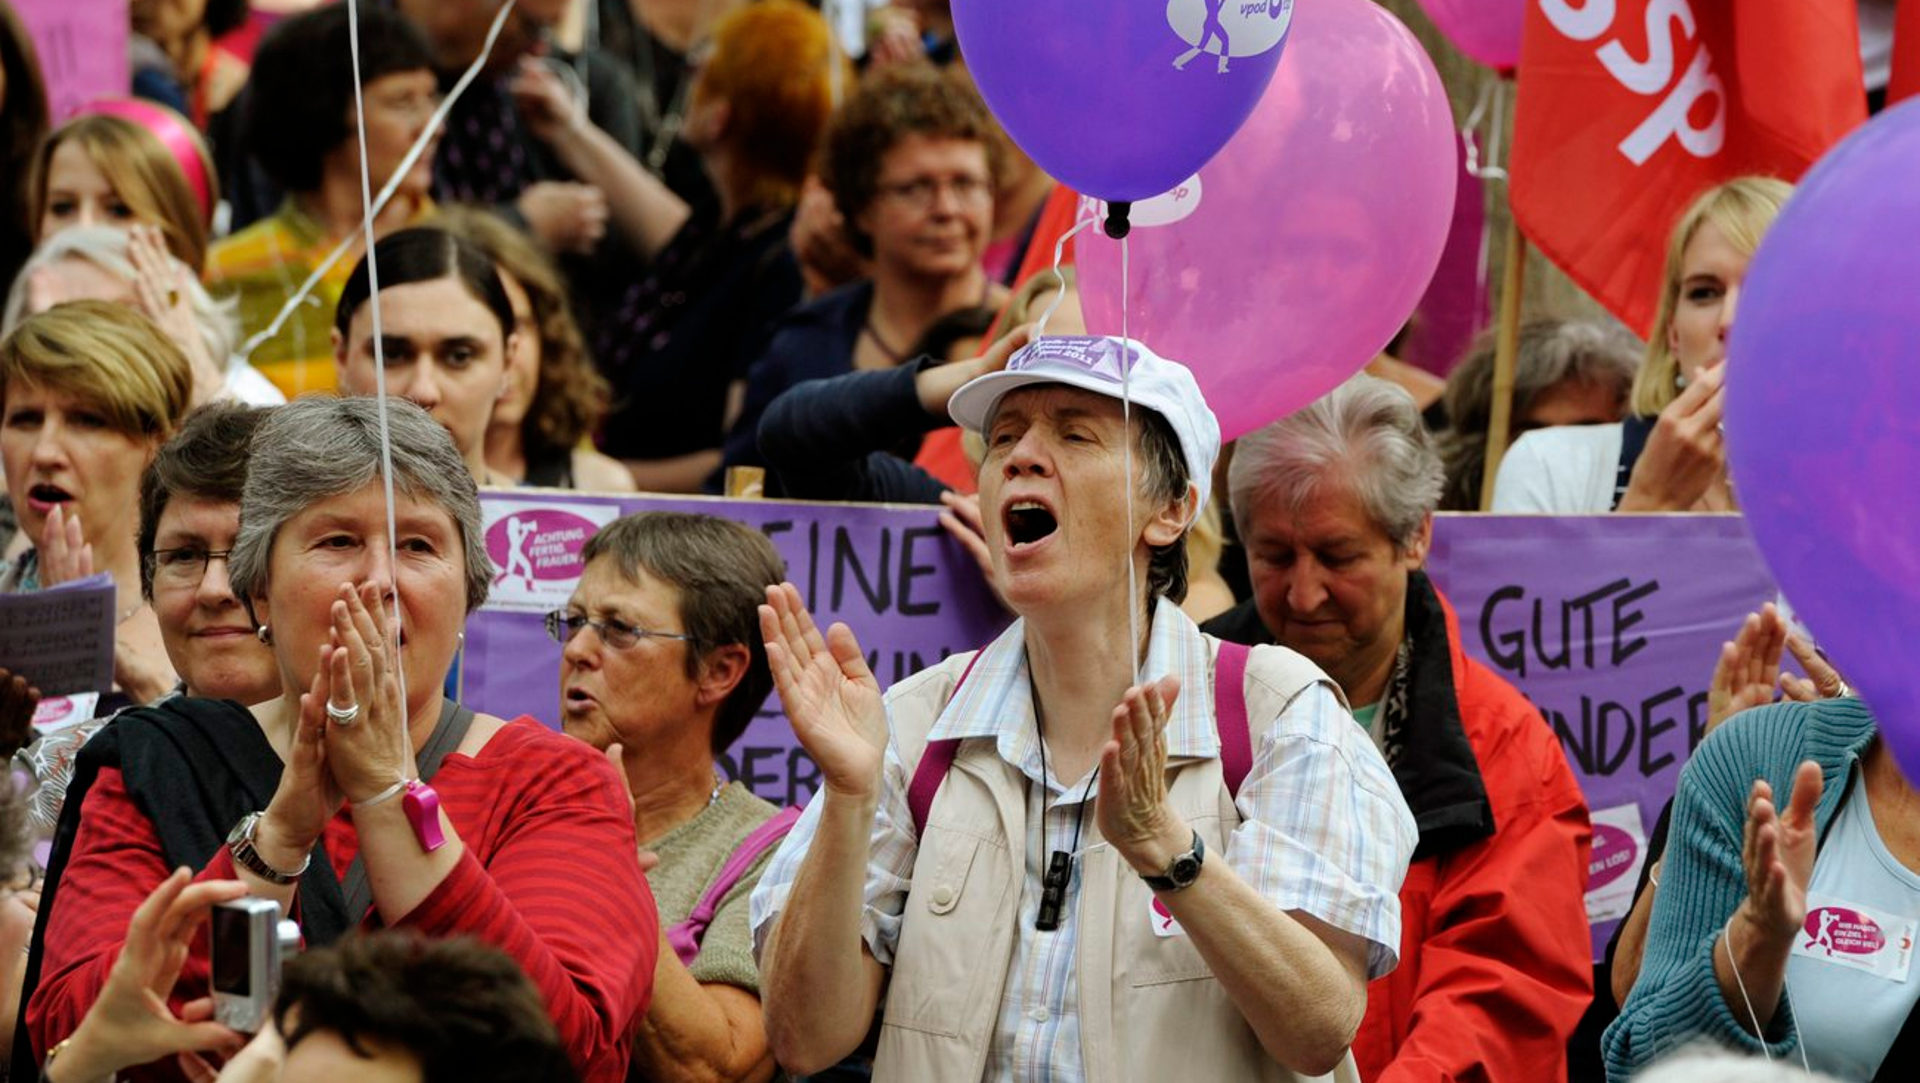 Streiken statt austreten. Im Bild Frauen am Frauenstreiktag vom 14. Juni 2011 in Zürich